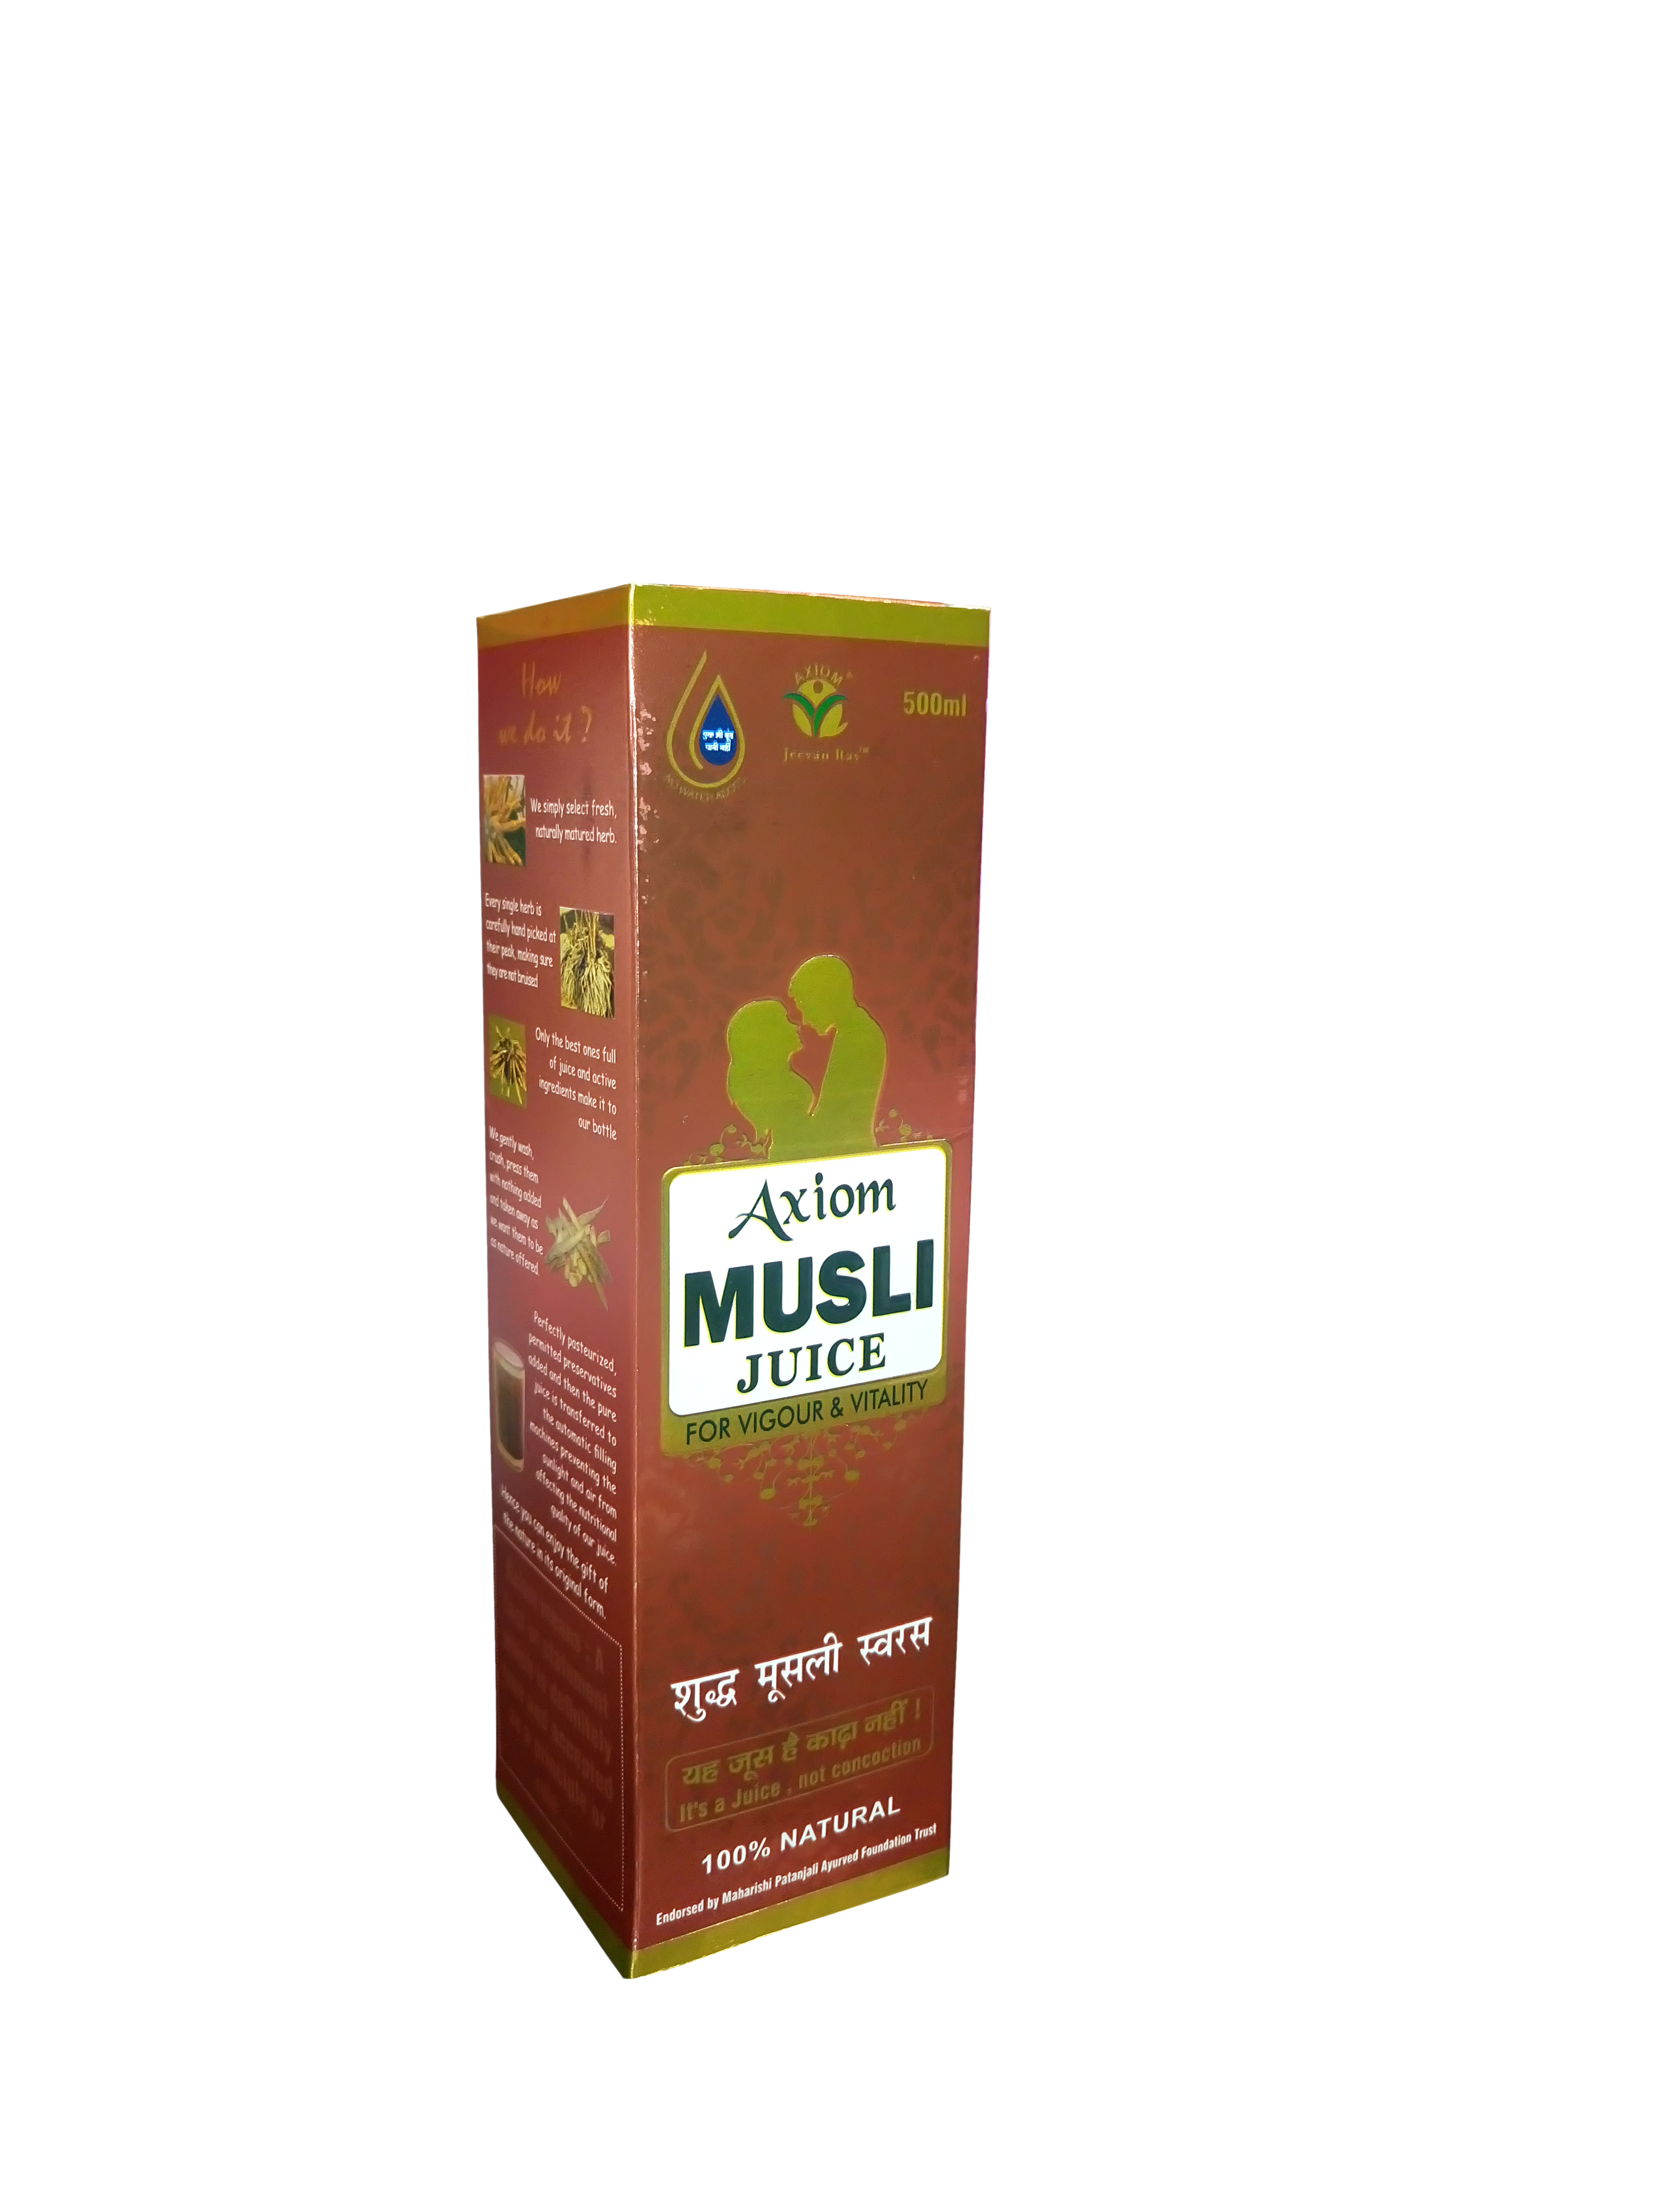 Buy Axiom Musli Juice at Best Price Online